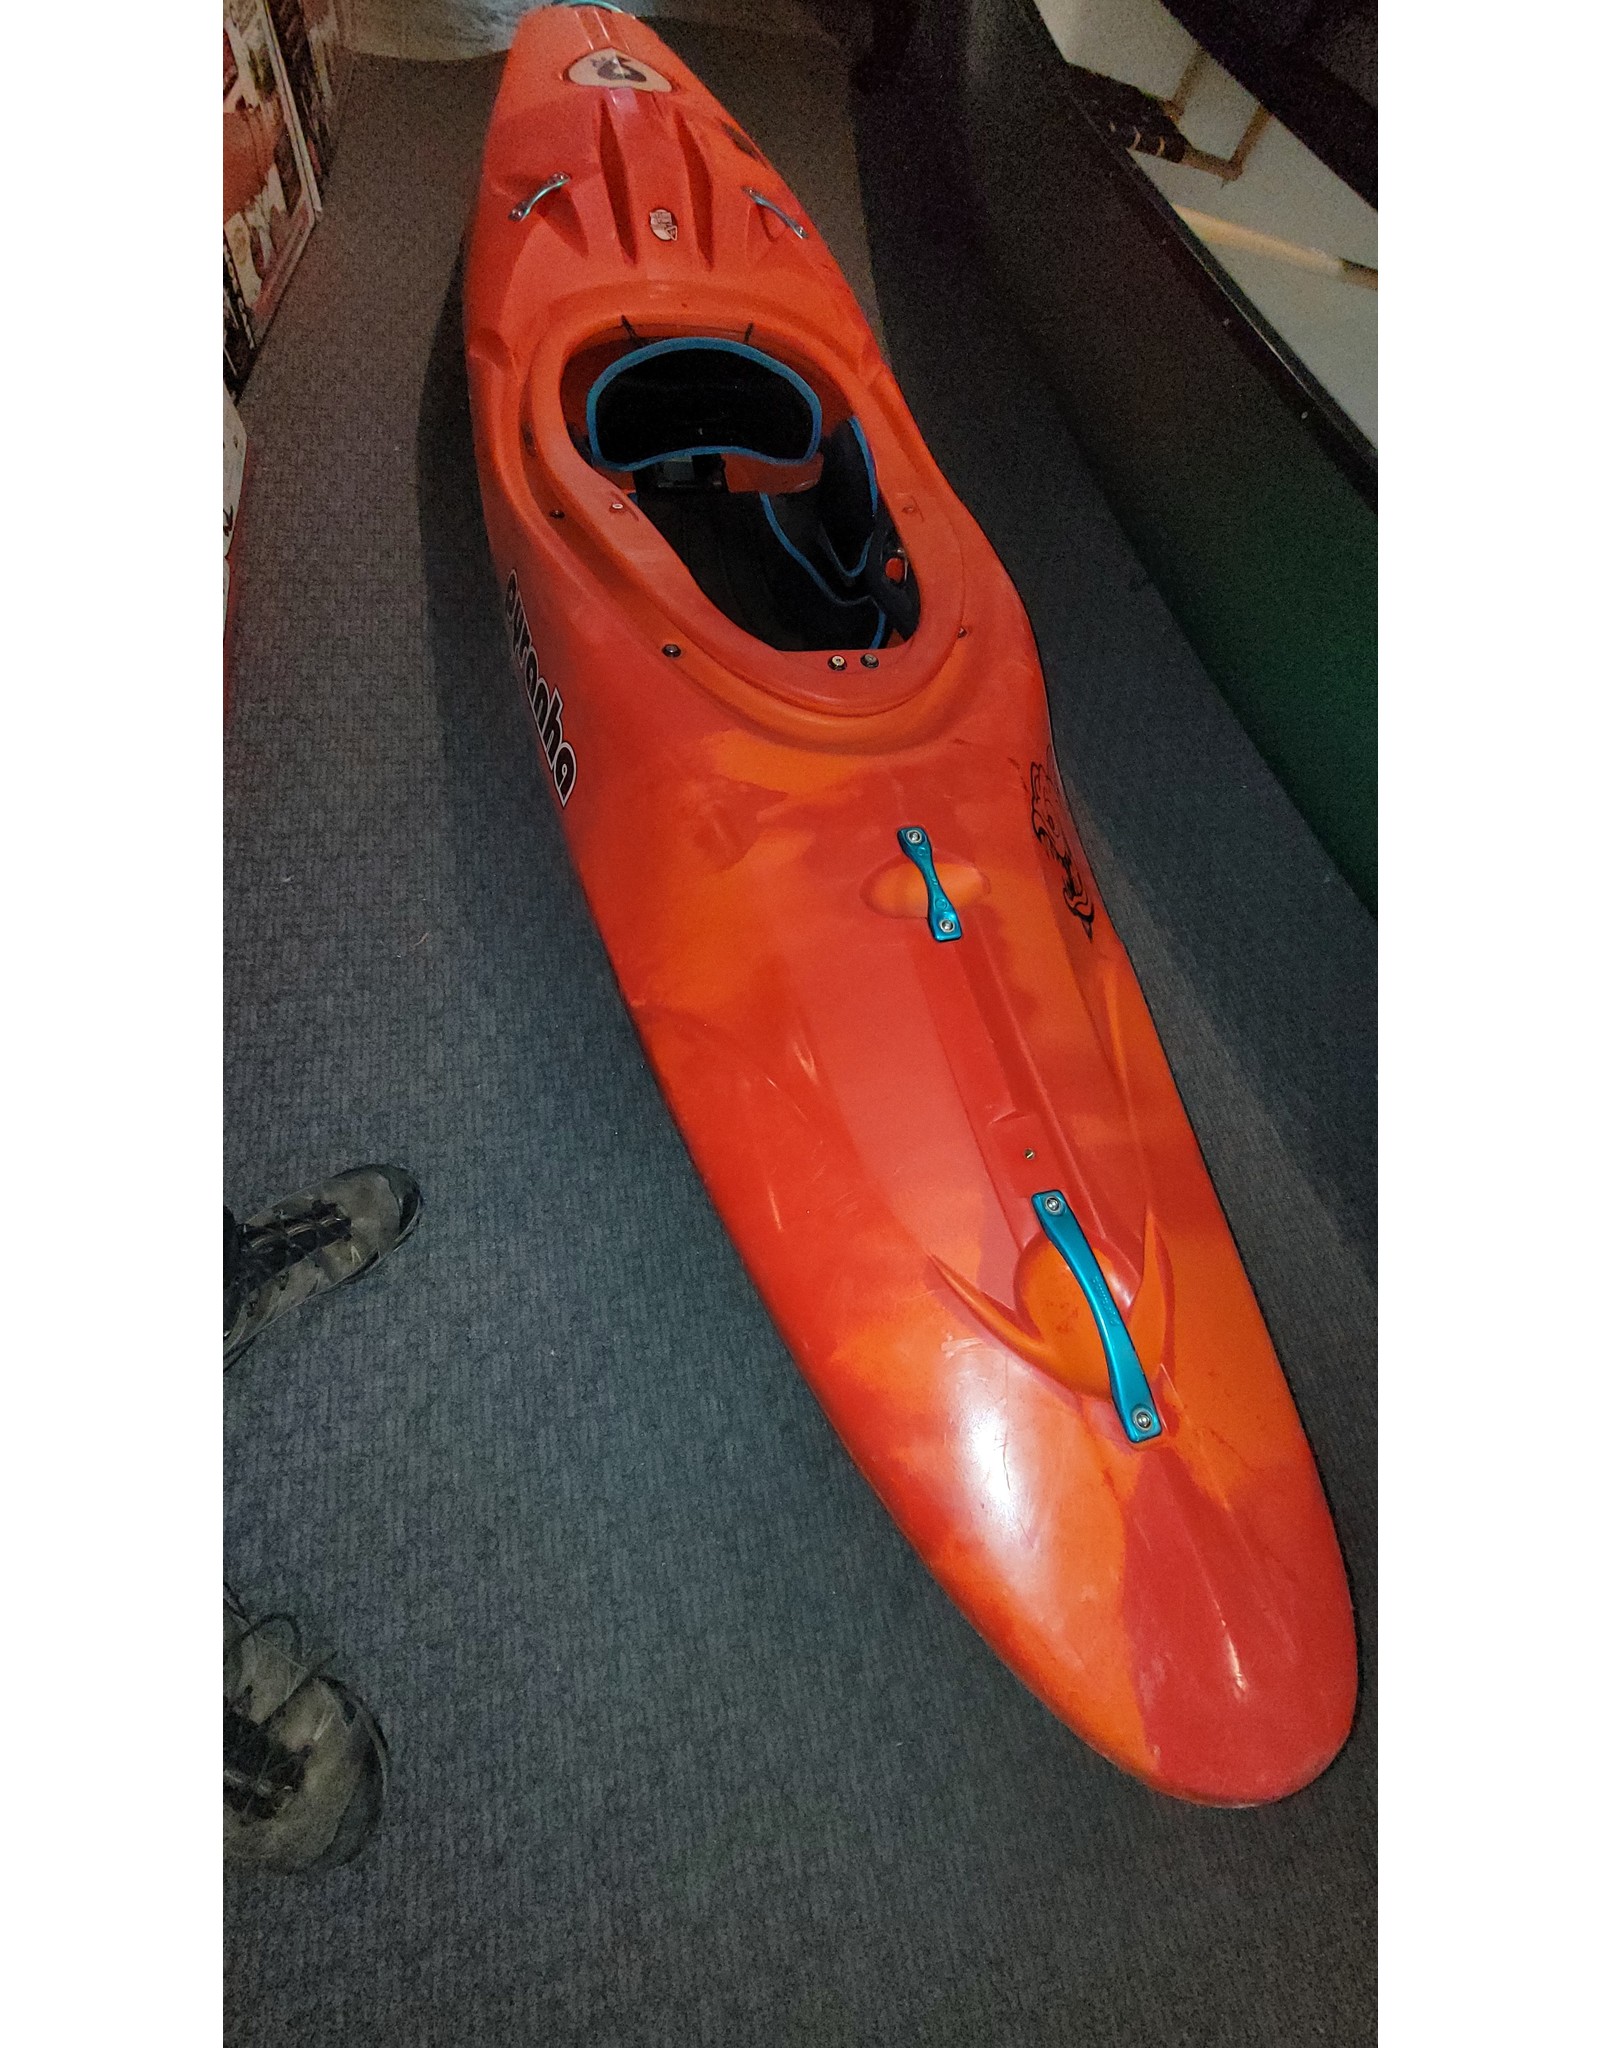 Pyranha Pyranha kayak 9R II Medium Orange soda (USED)